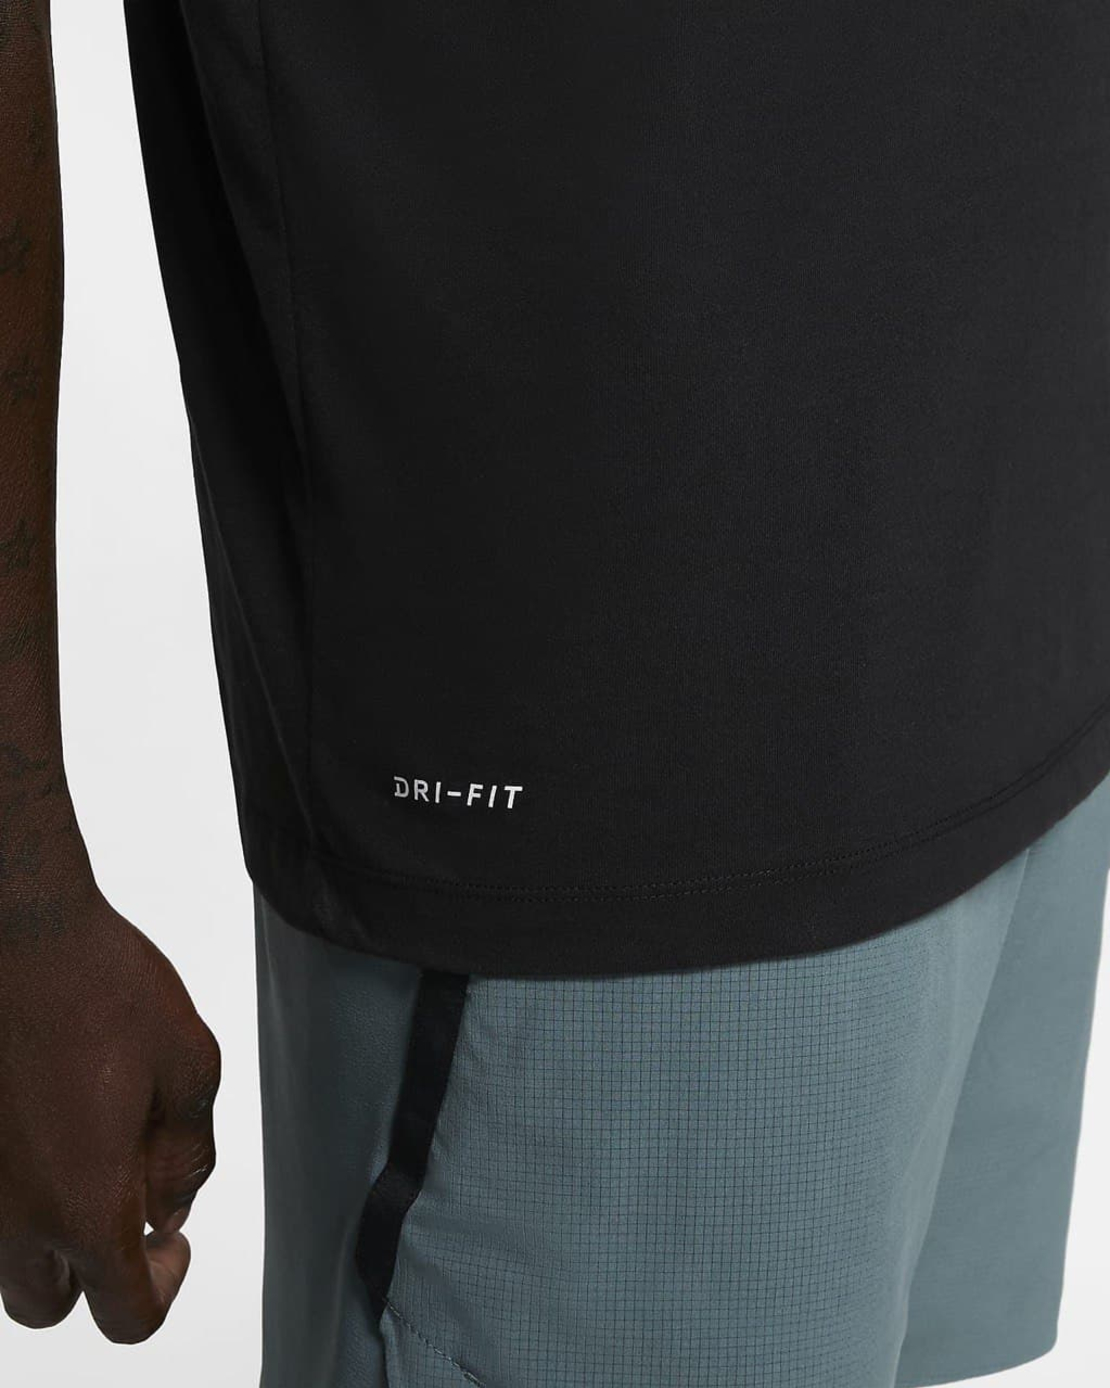 חולצת נייק גברים | Nike Dri-Fit Men's Training T-Shirt